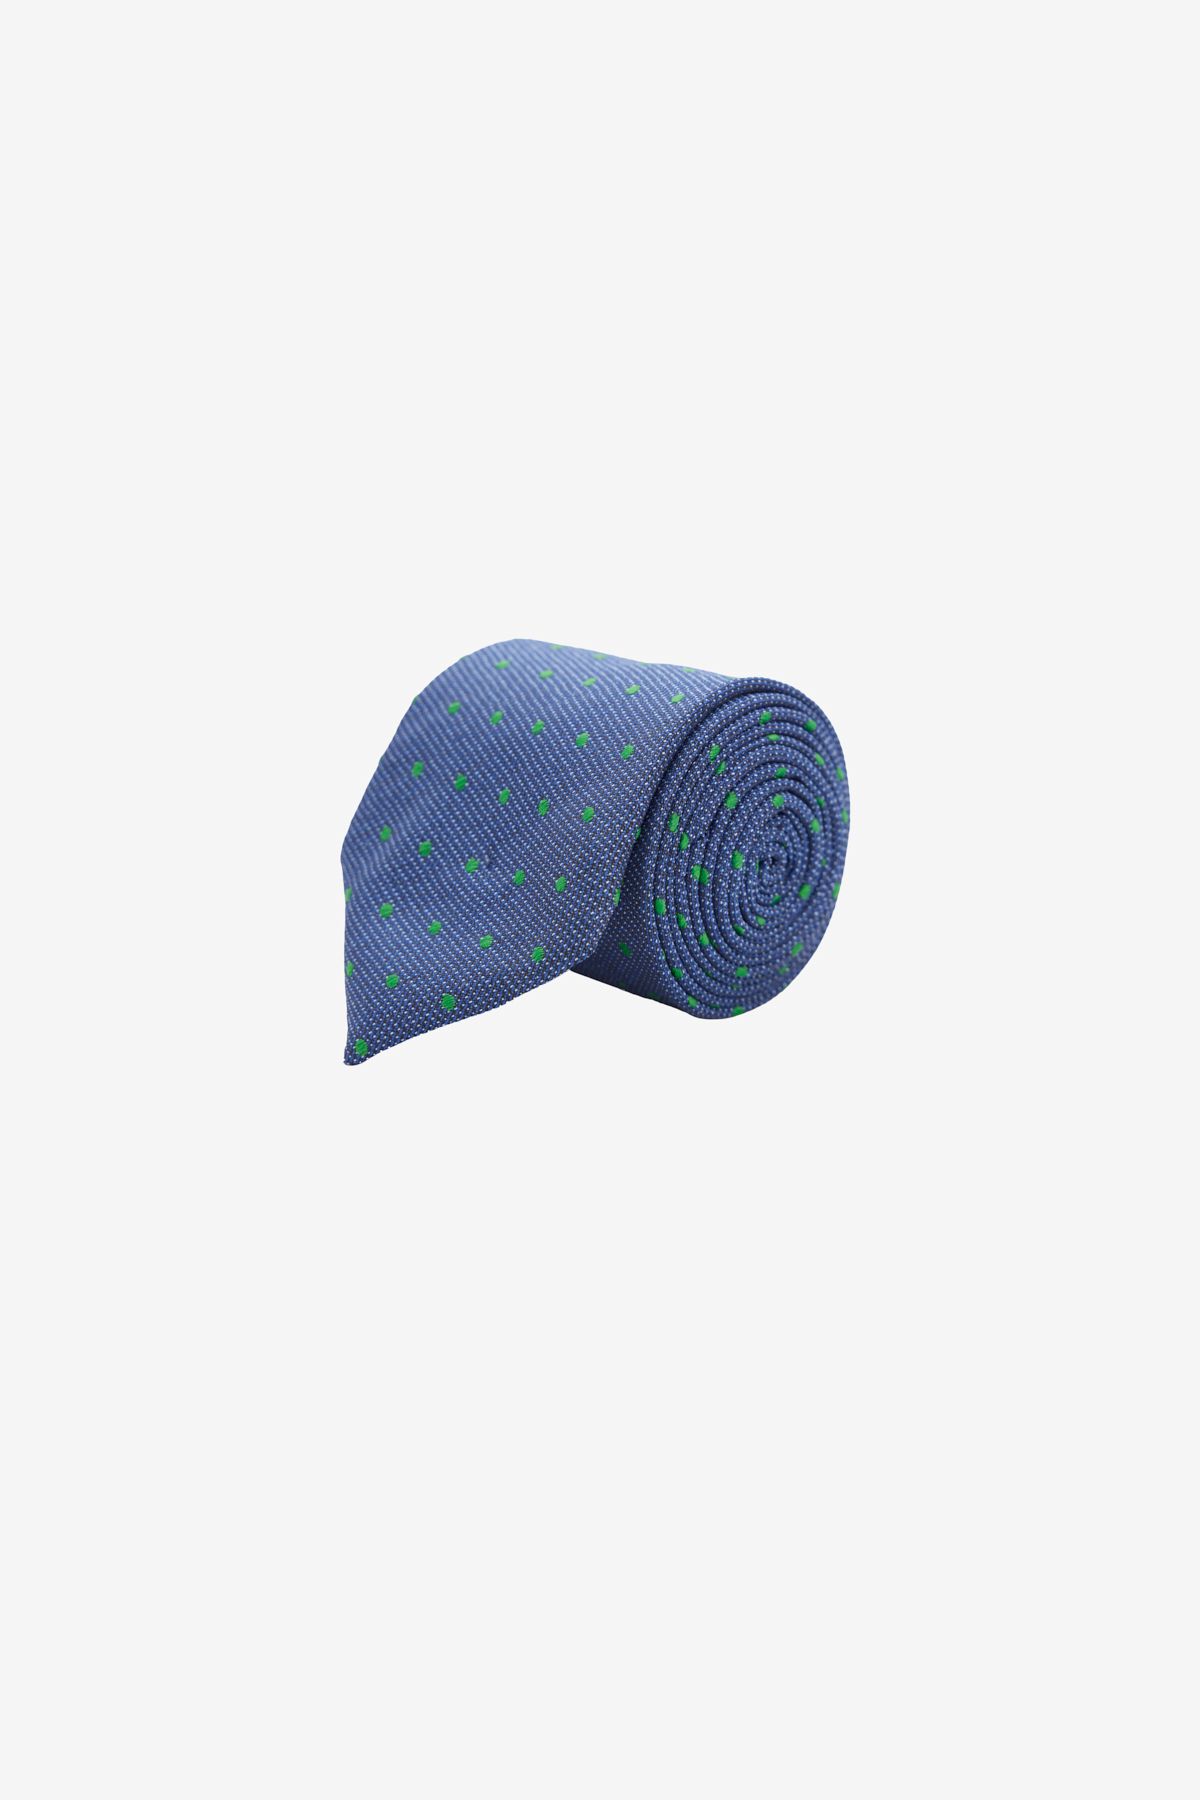 Altınyıldız Classics Мужской классический галстук сине-зеленого цвета с рисунком 4A2122100097